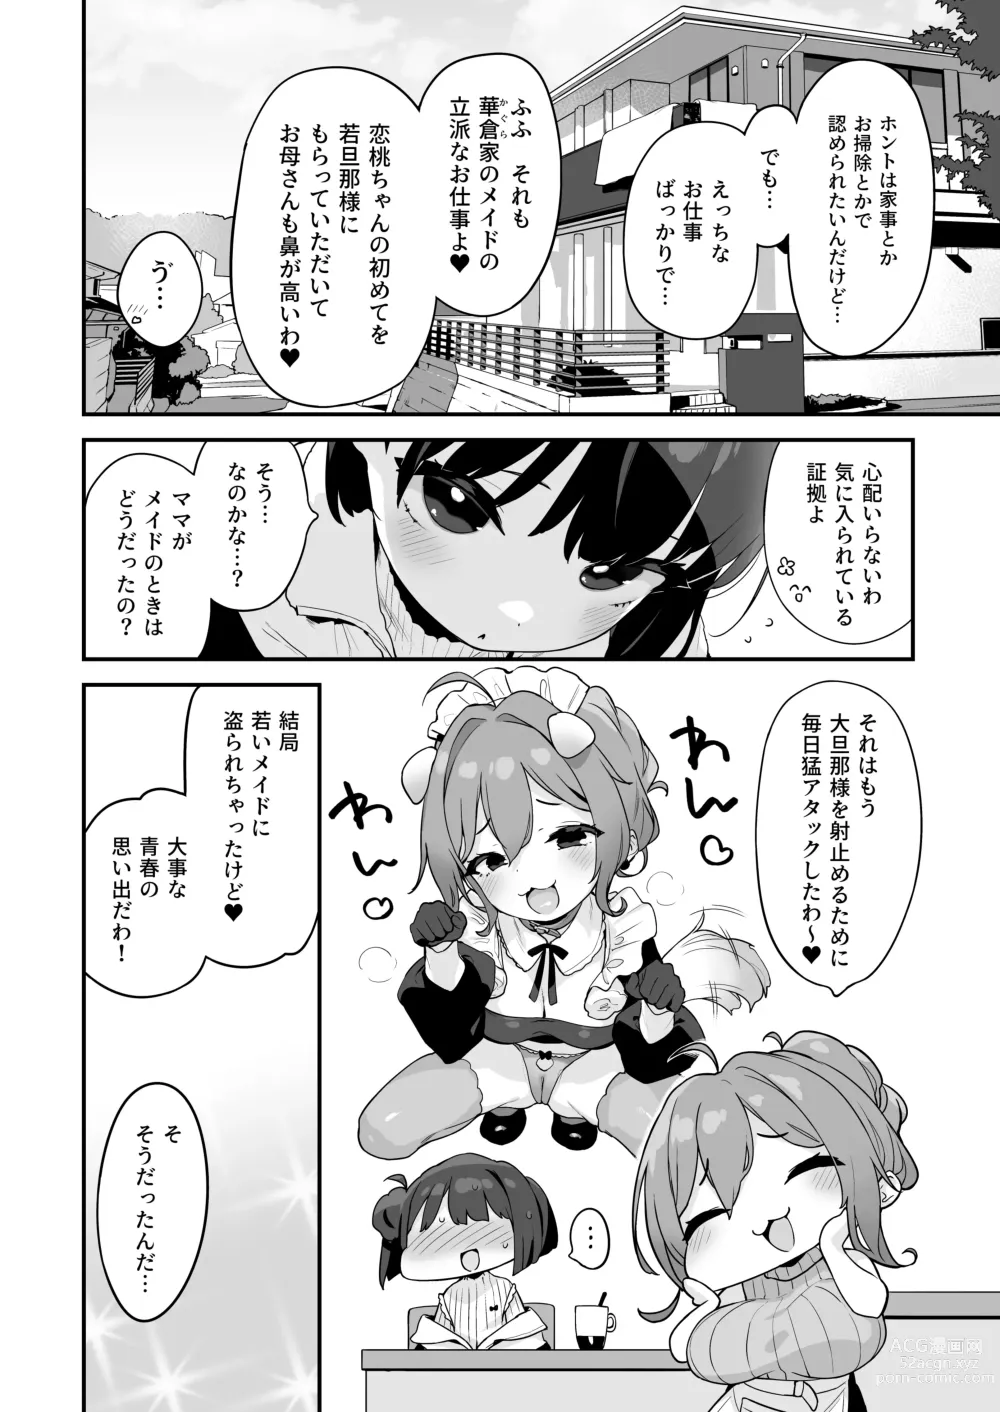 Page 12 of doujinshi Komomo wa Goshujinsama Senyo no Ryoana Nikubenki Loli Maid